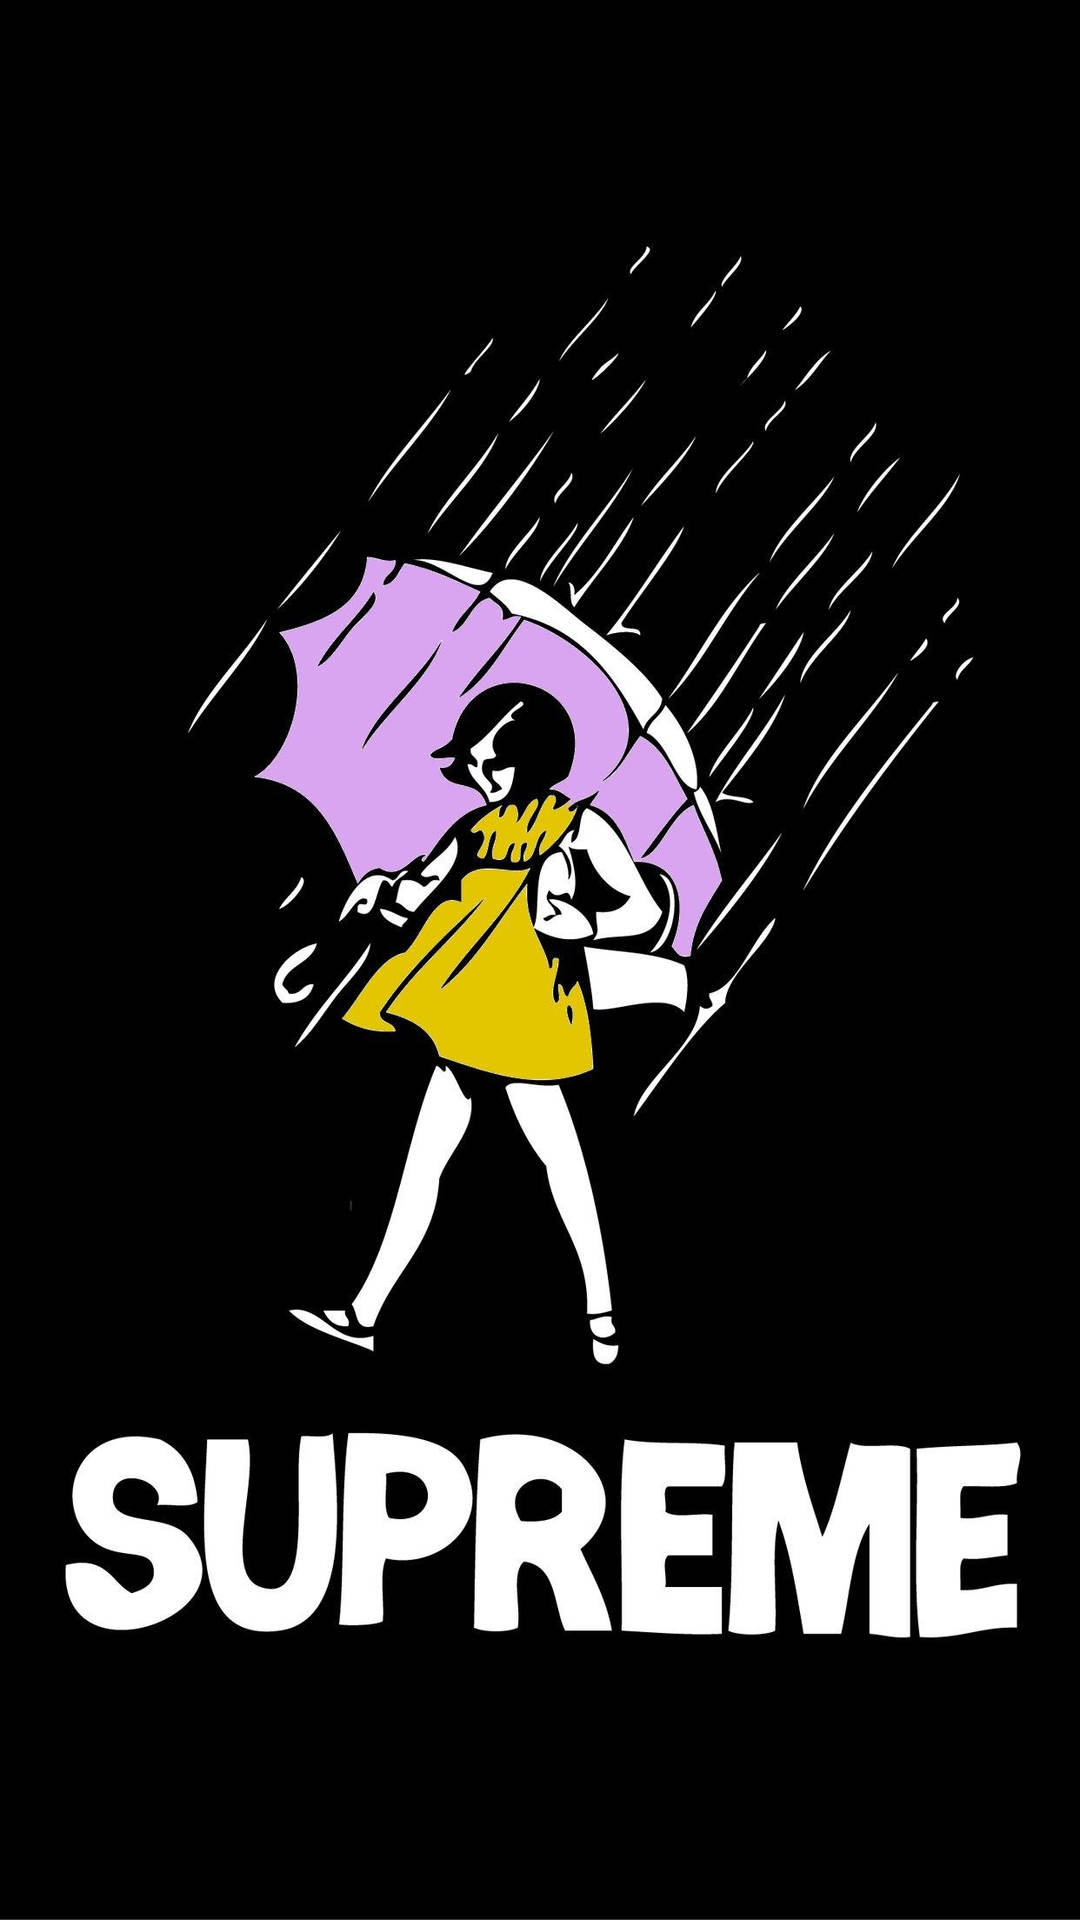 Download Supreme Sticker Dope Cartoon Wallpaper 